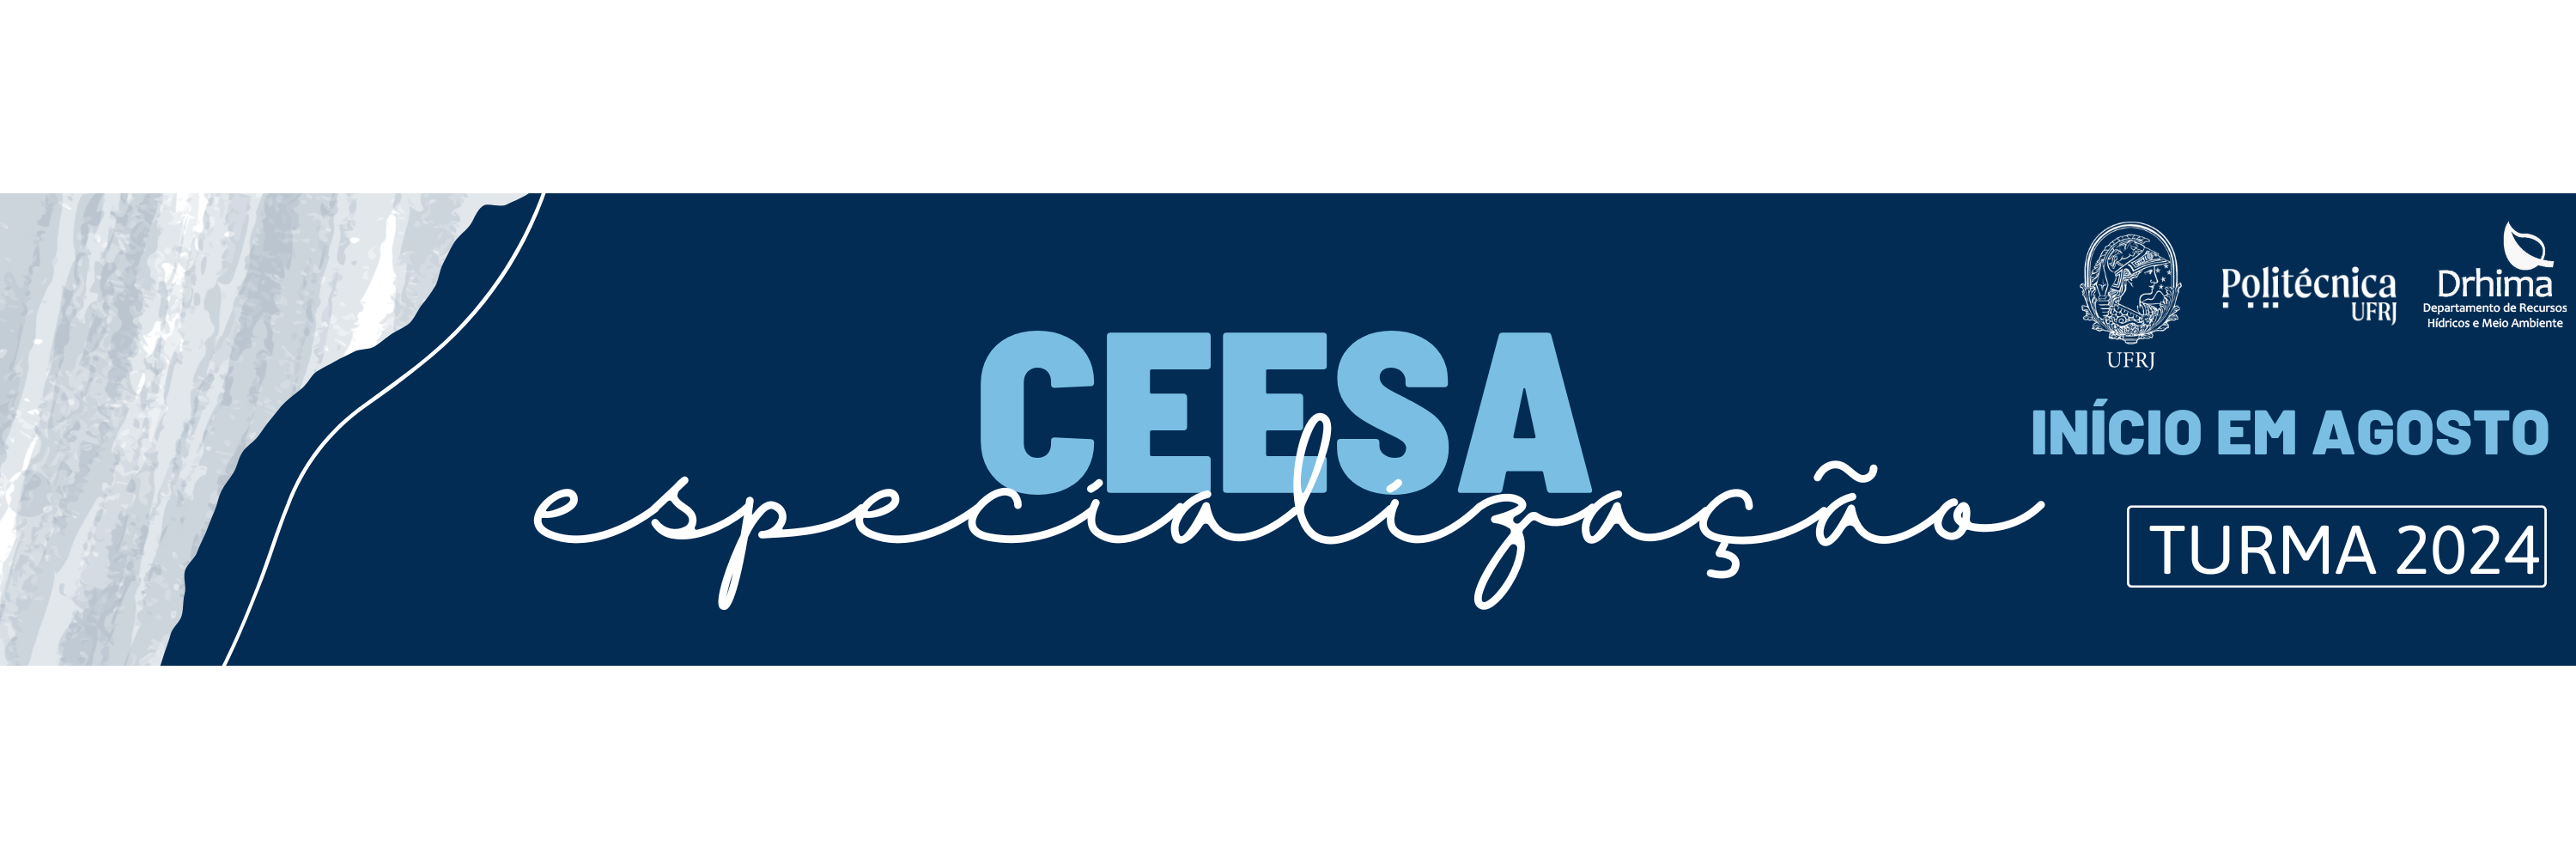 Banner CEESA 2024